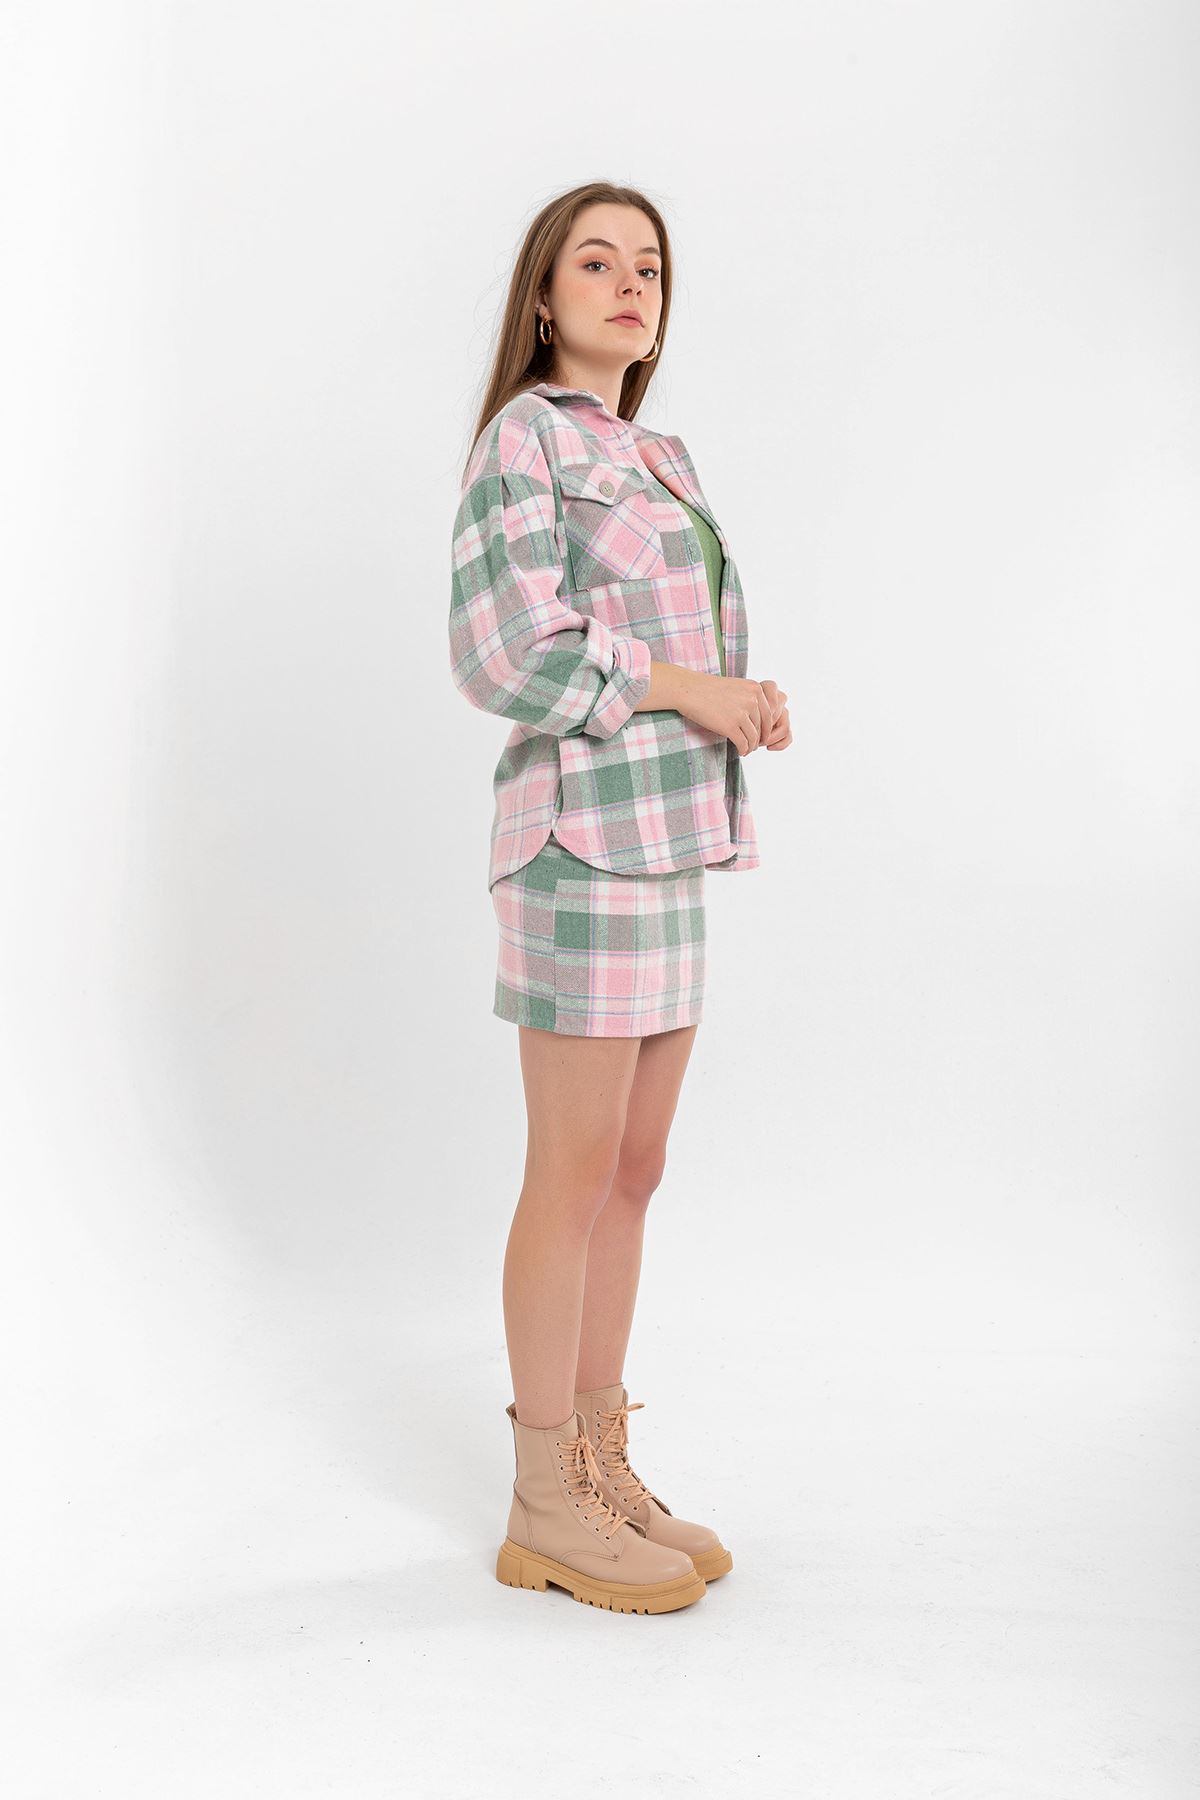 Lumberjack Fabric Tight Fit Striped Mini Skirt - Light Pink